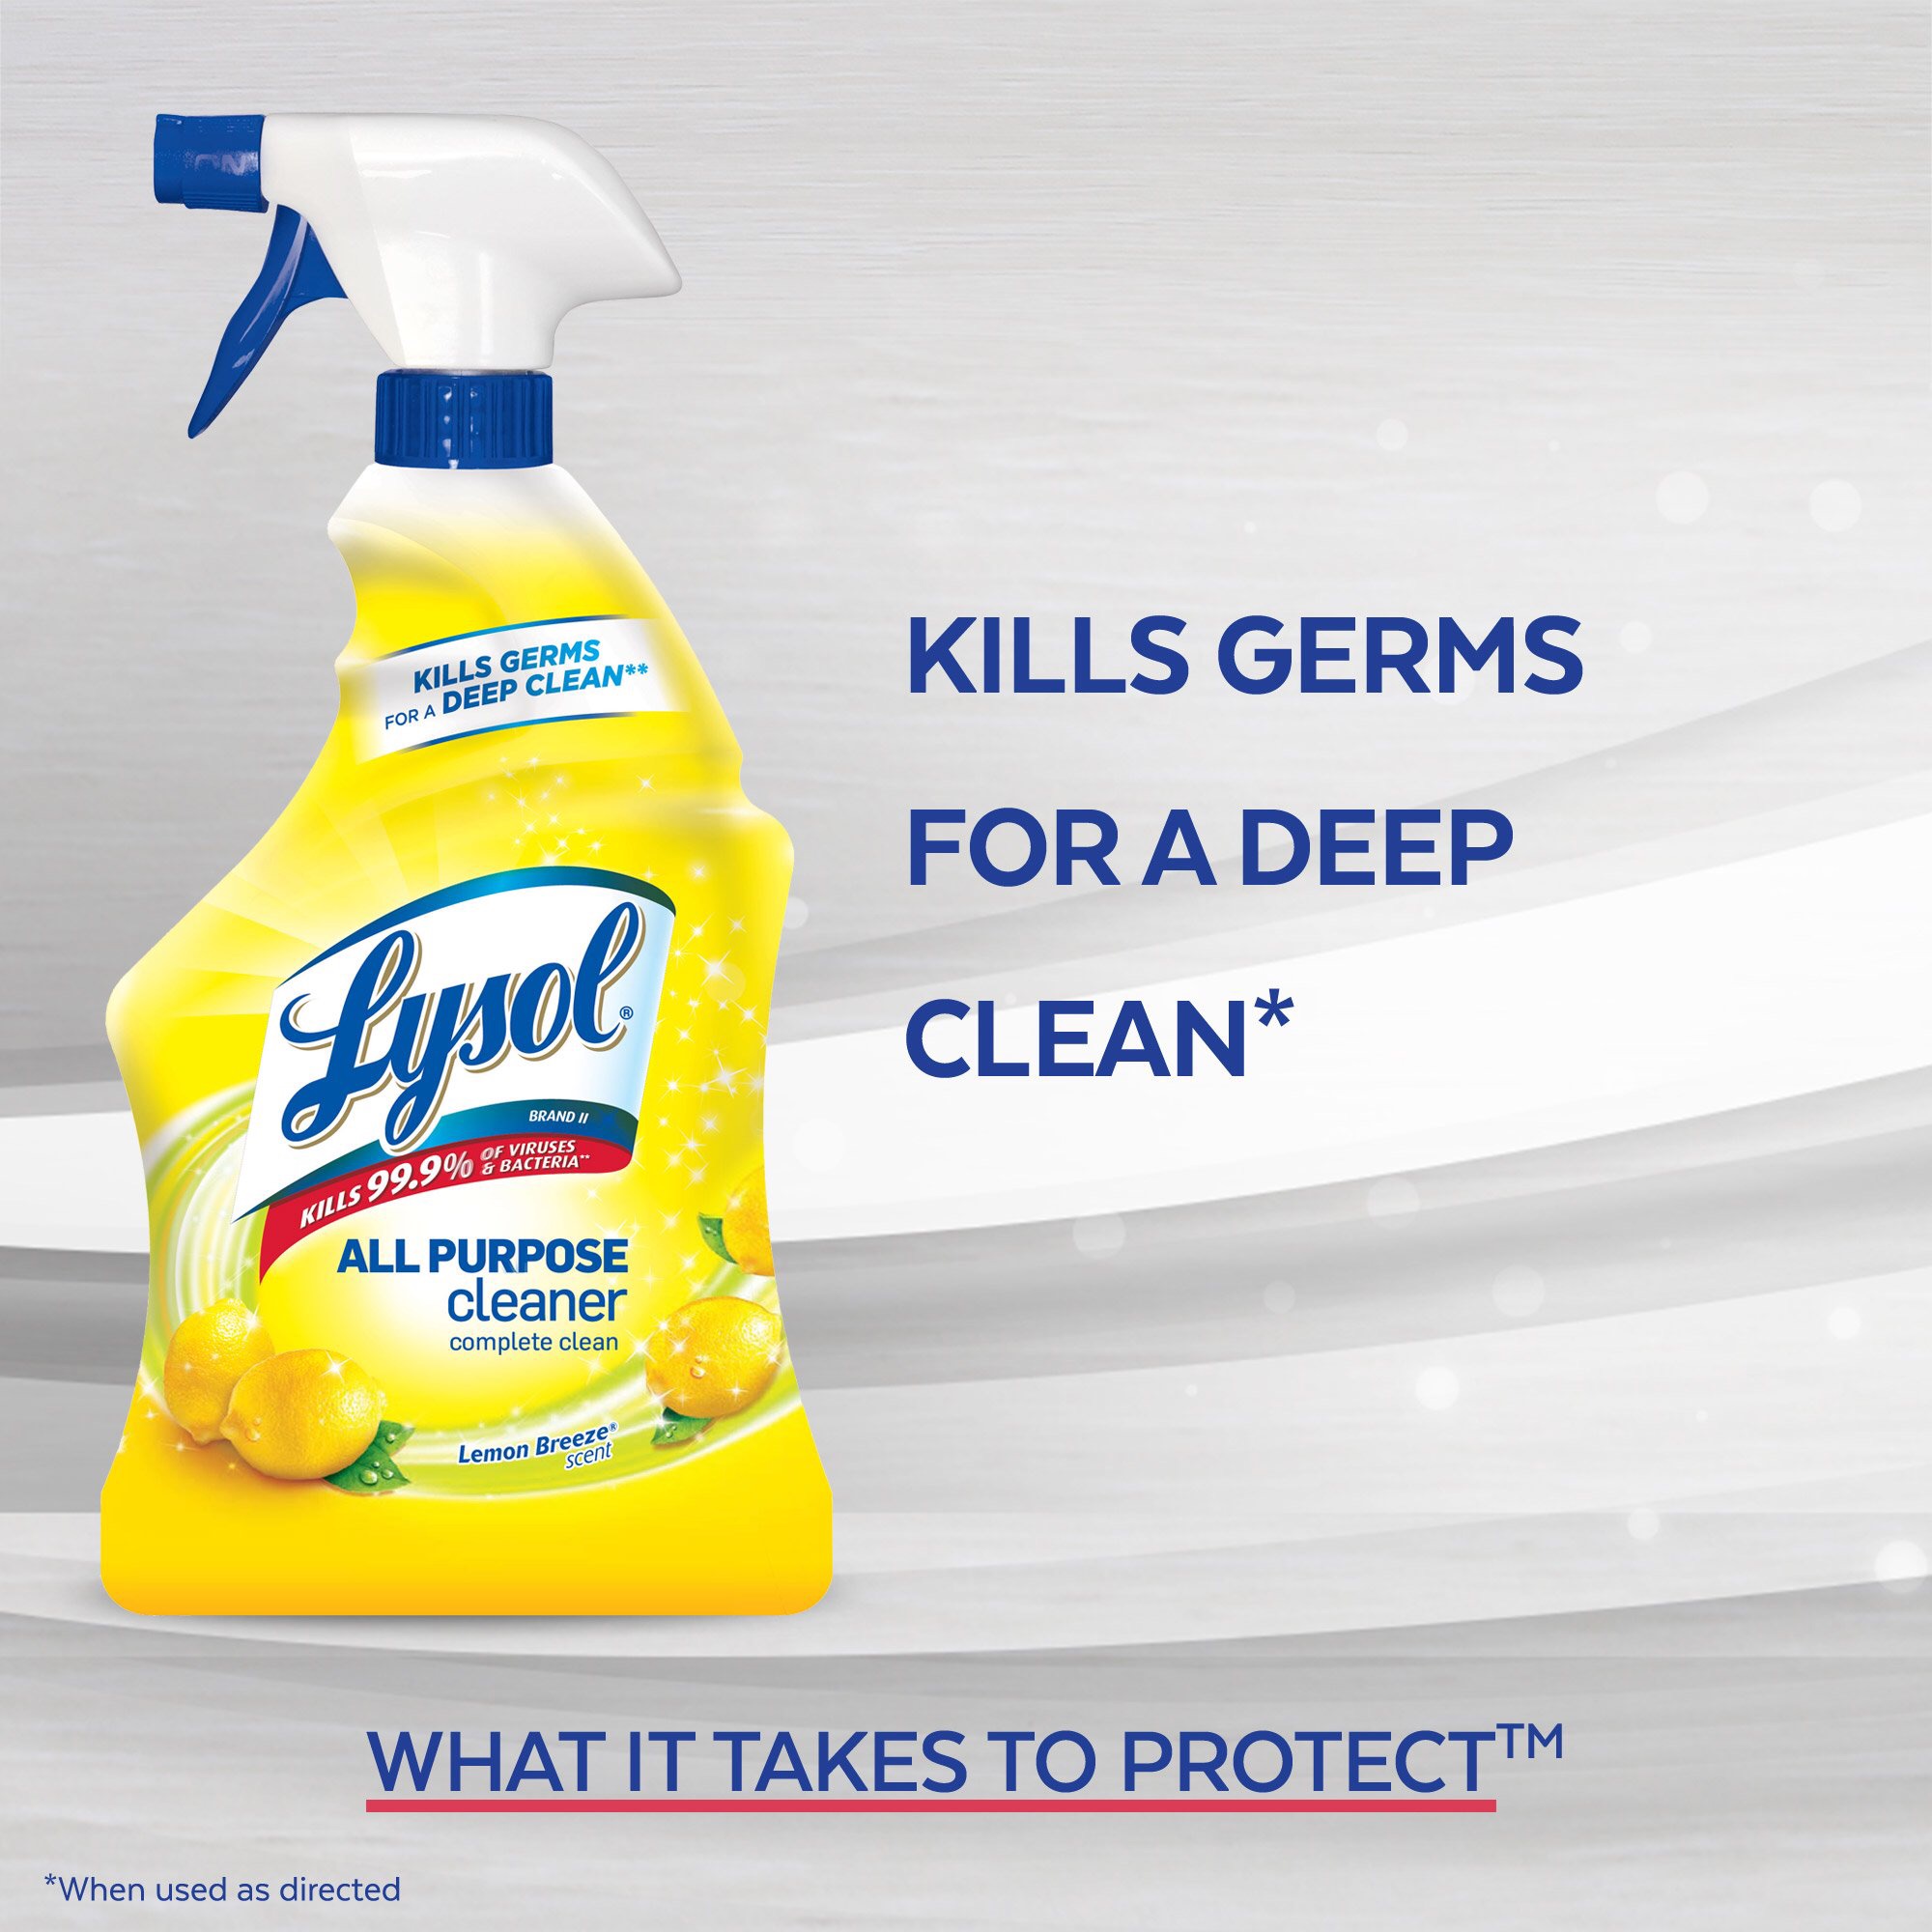 多功能清洁喷雾
Lysol All Purpose Cleaner Spray, Lemon Breeze, 32oz - Walmart.com - Walmart.com